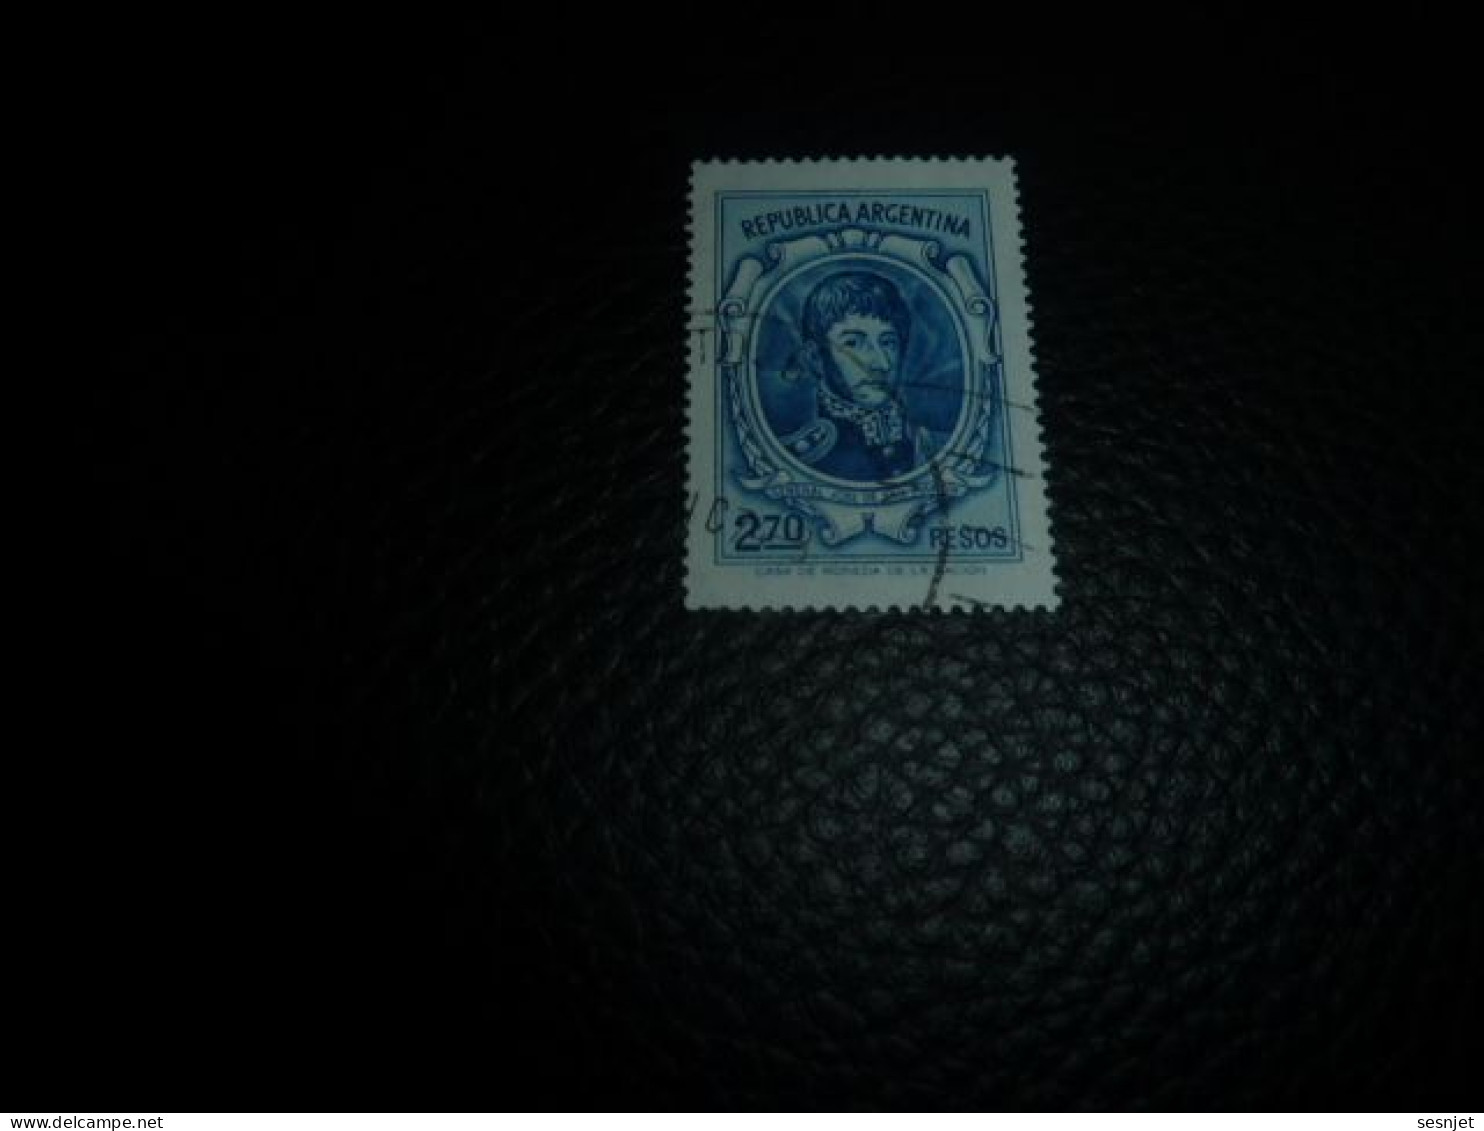 Republica Argentina - Général José De San Martin - 2.70 Pesos - Yt 975 - Bleu - Oblitéré - Année 1974 - - Used Stamps